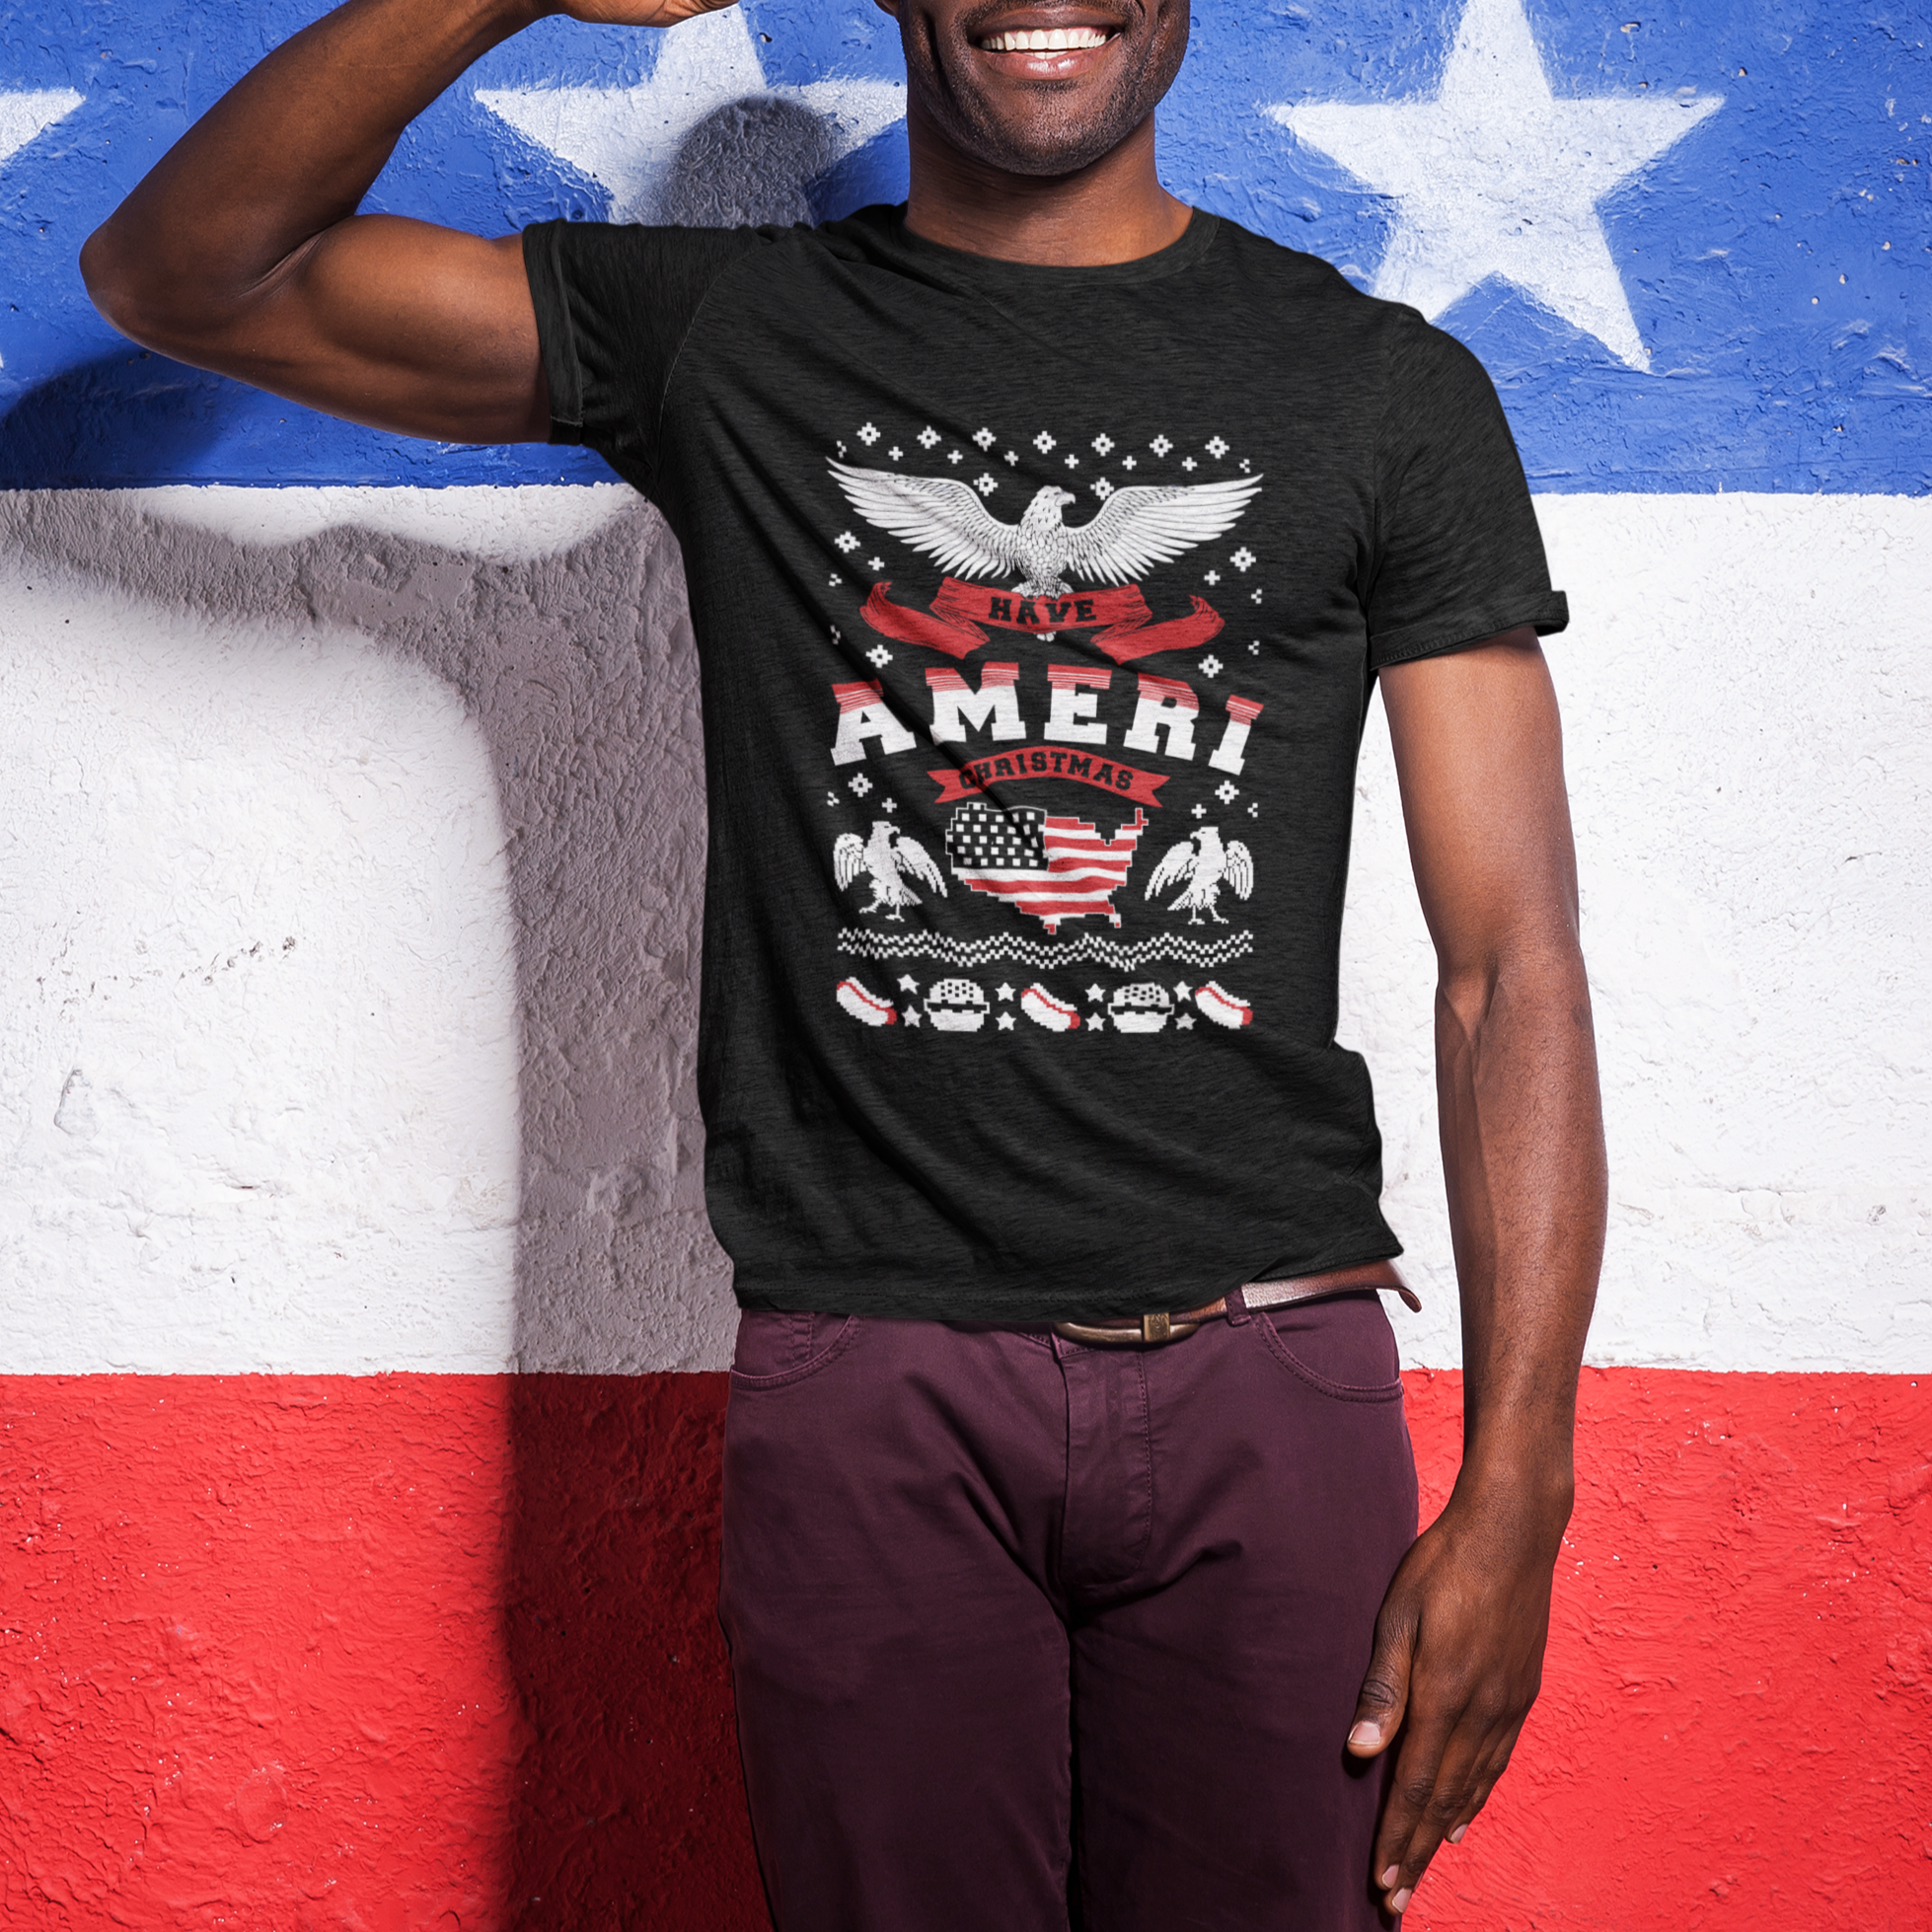 Have Ameri-Christmas USA Patriotic Eagle Xmas T Shirt TS09